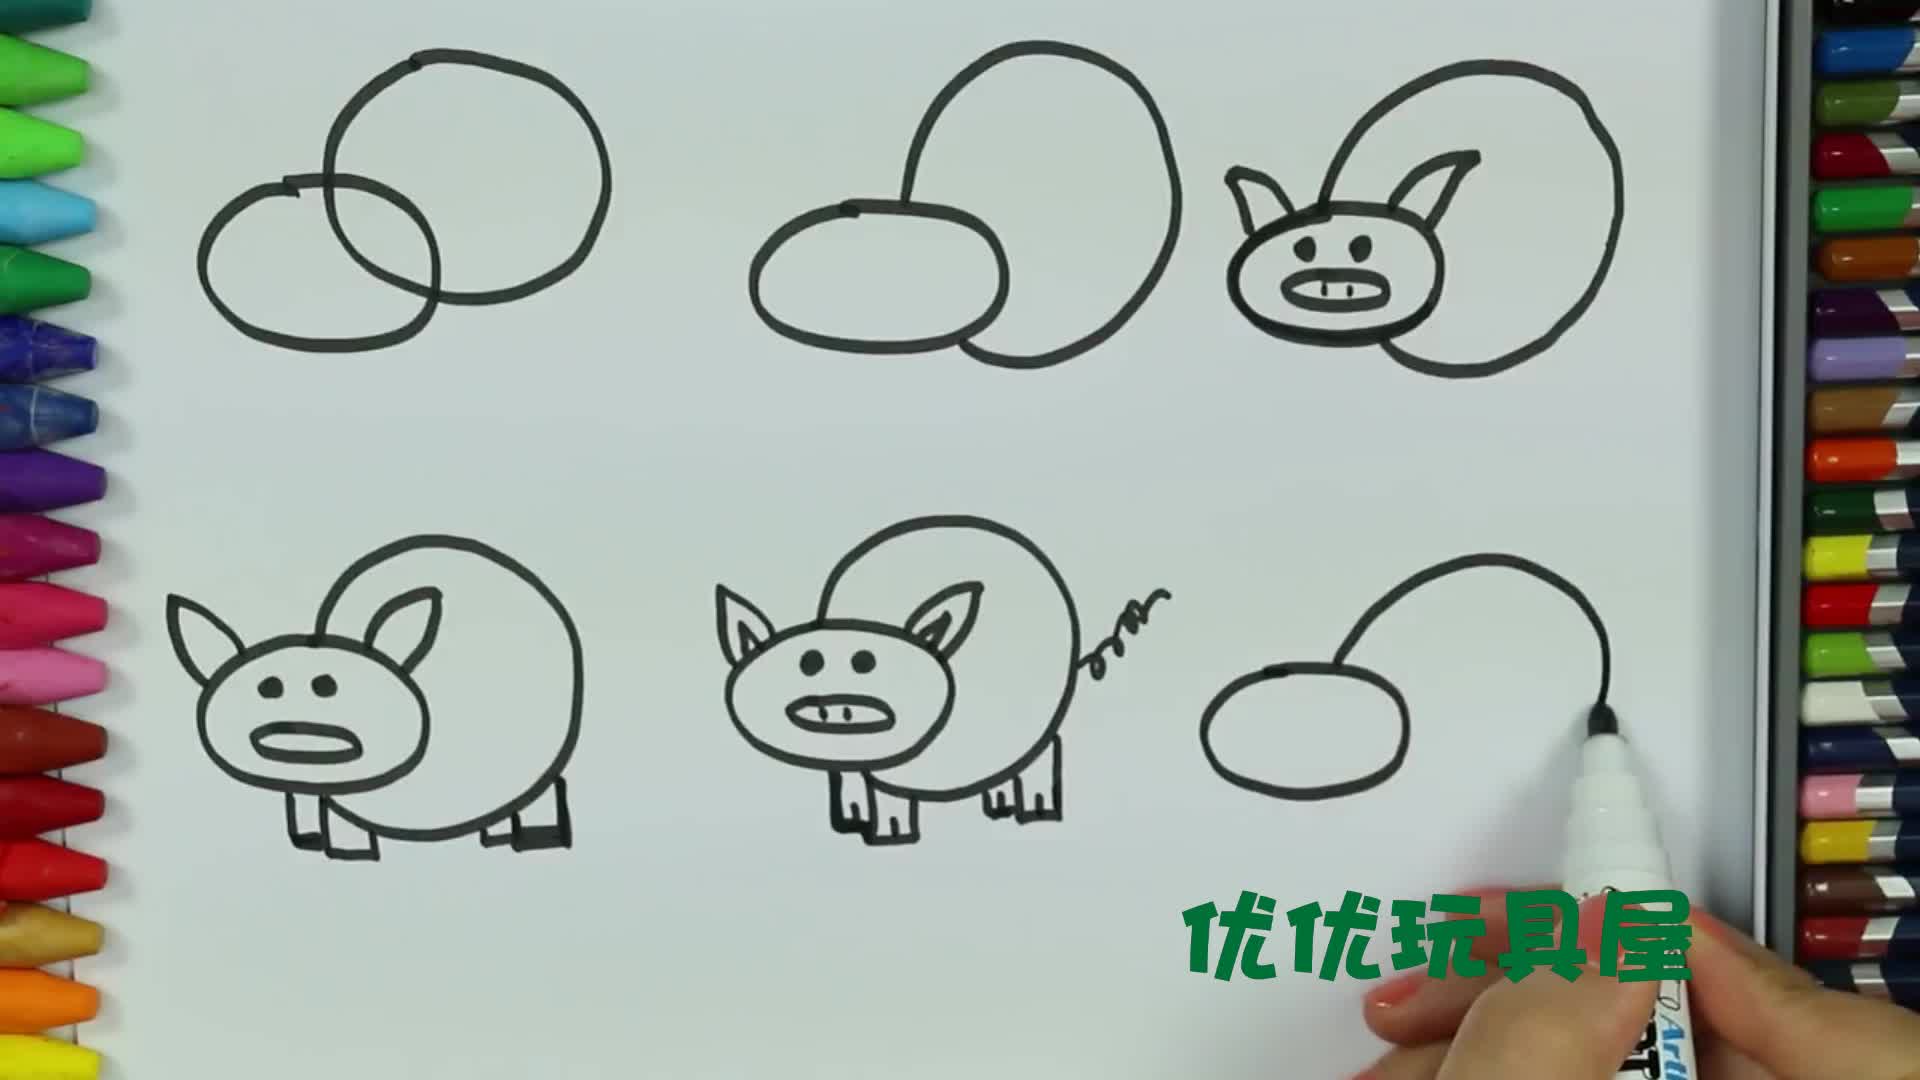 亲子早教儿童绘画 一起来学习如何画出 小肥猪吧